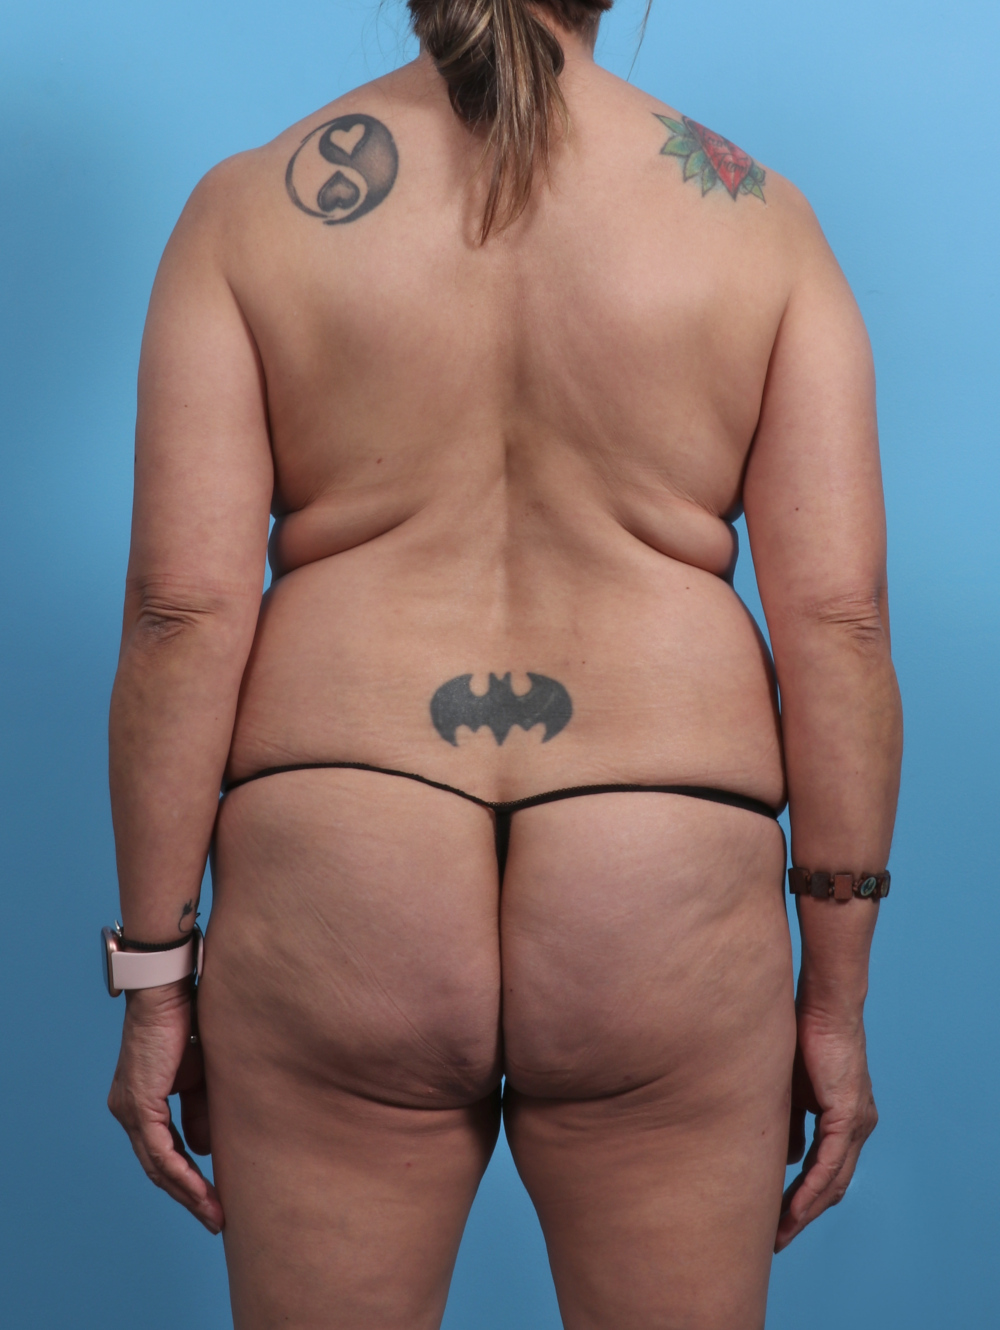 Liposuction Patient Photo - Case 4489 - before view-1